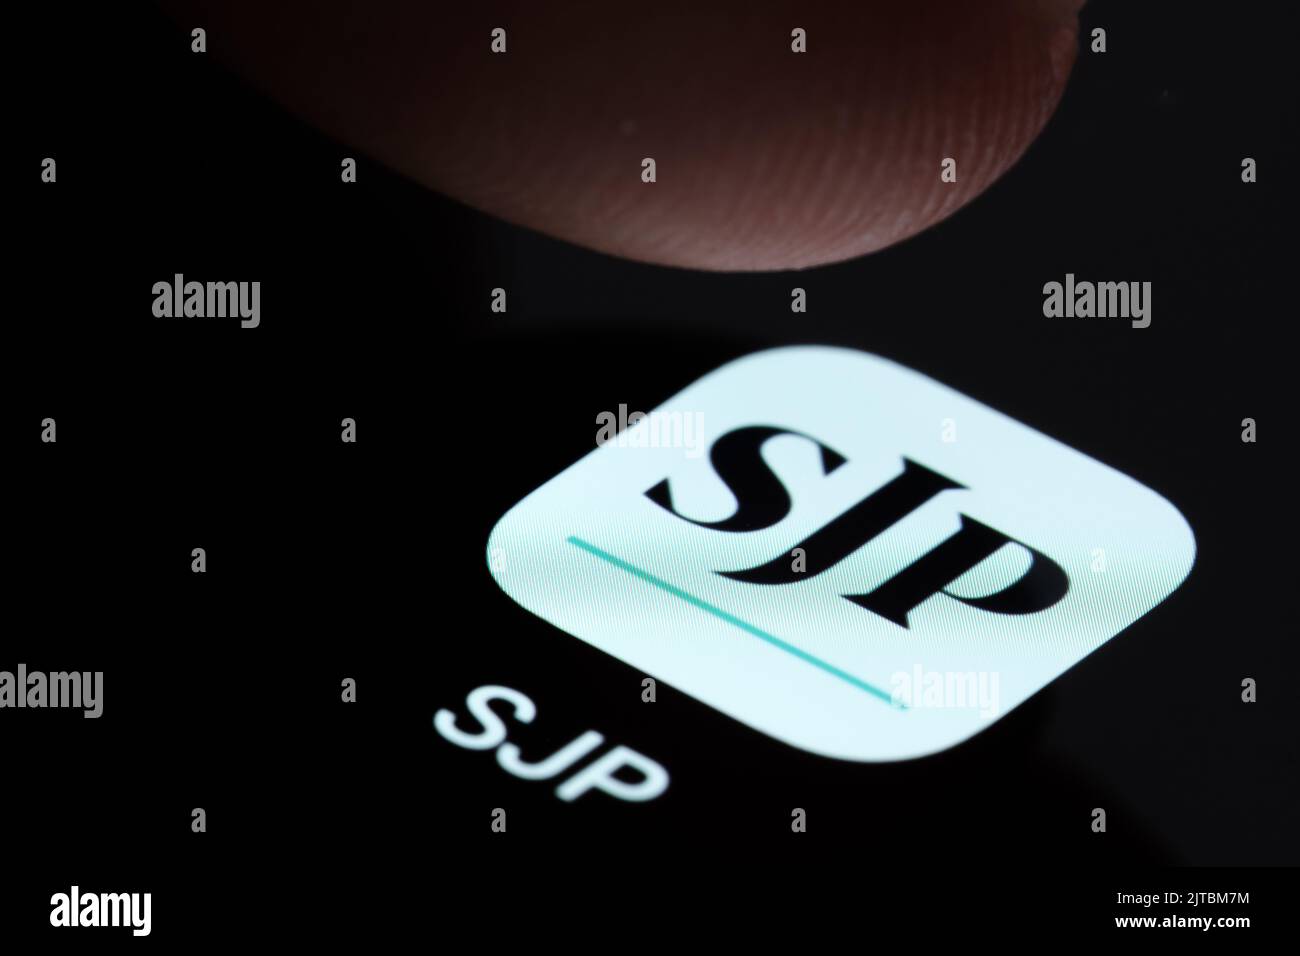 App SJP visualizzata sullo schermo dello smartphone e toccare con un dito. St. James's Place (SJP) è una società di consulenza finanziaria specializzata. Stafford, Regno Unito Foto Stock